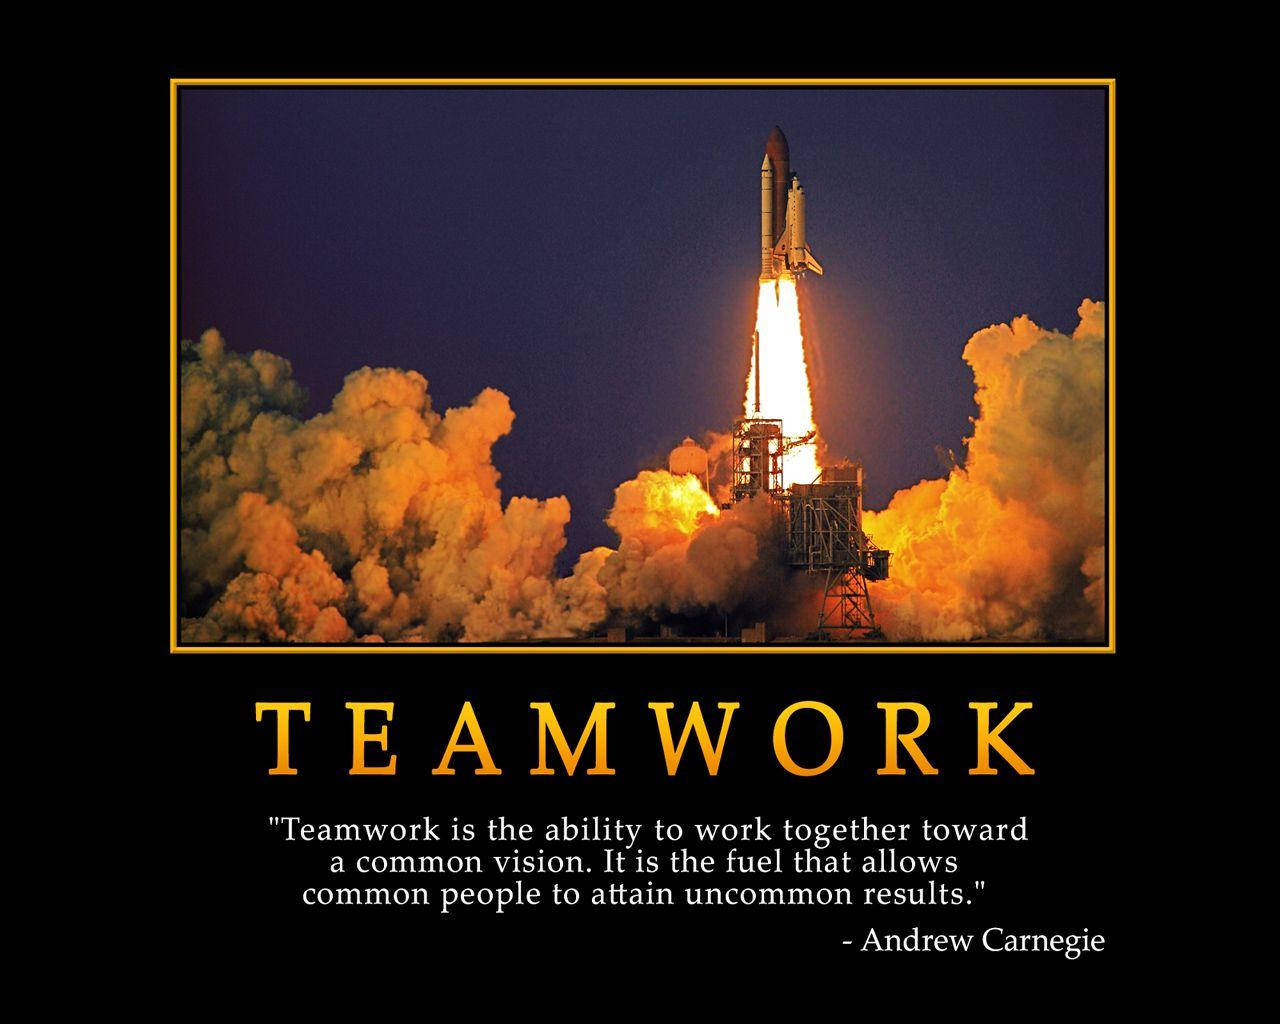 Definering af teamwork af Andrew Carnegie Quote Rocket Launch Wallpaper. Wallpaper